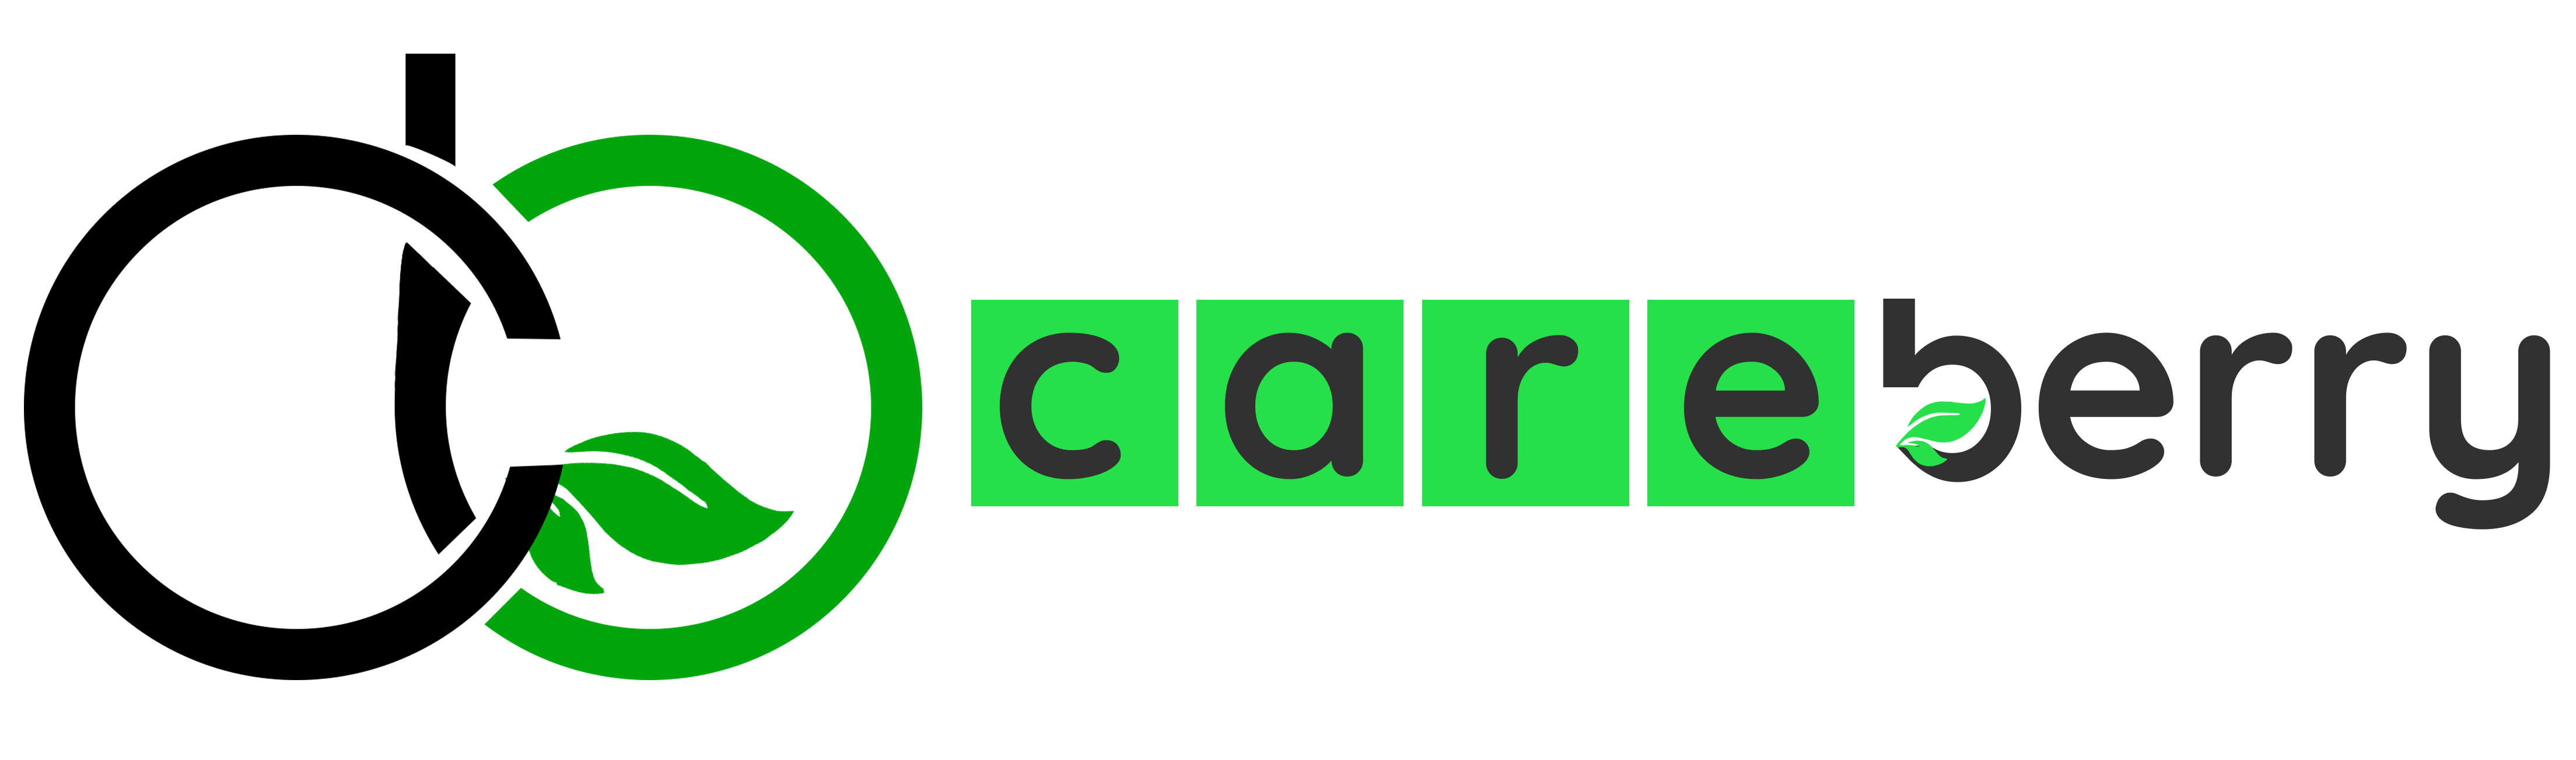 Careberry Software Logo